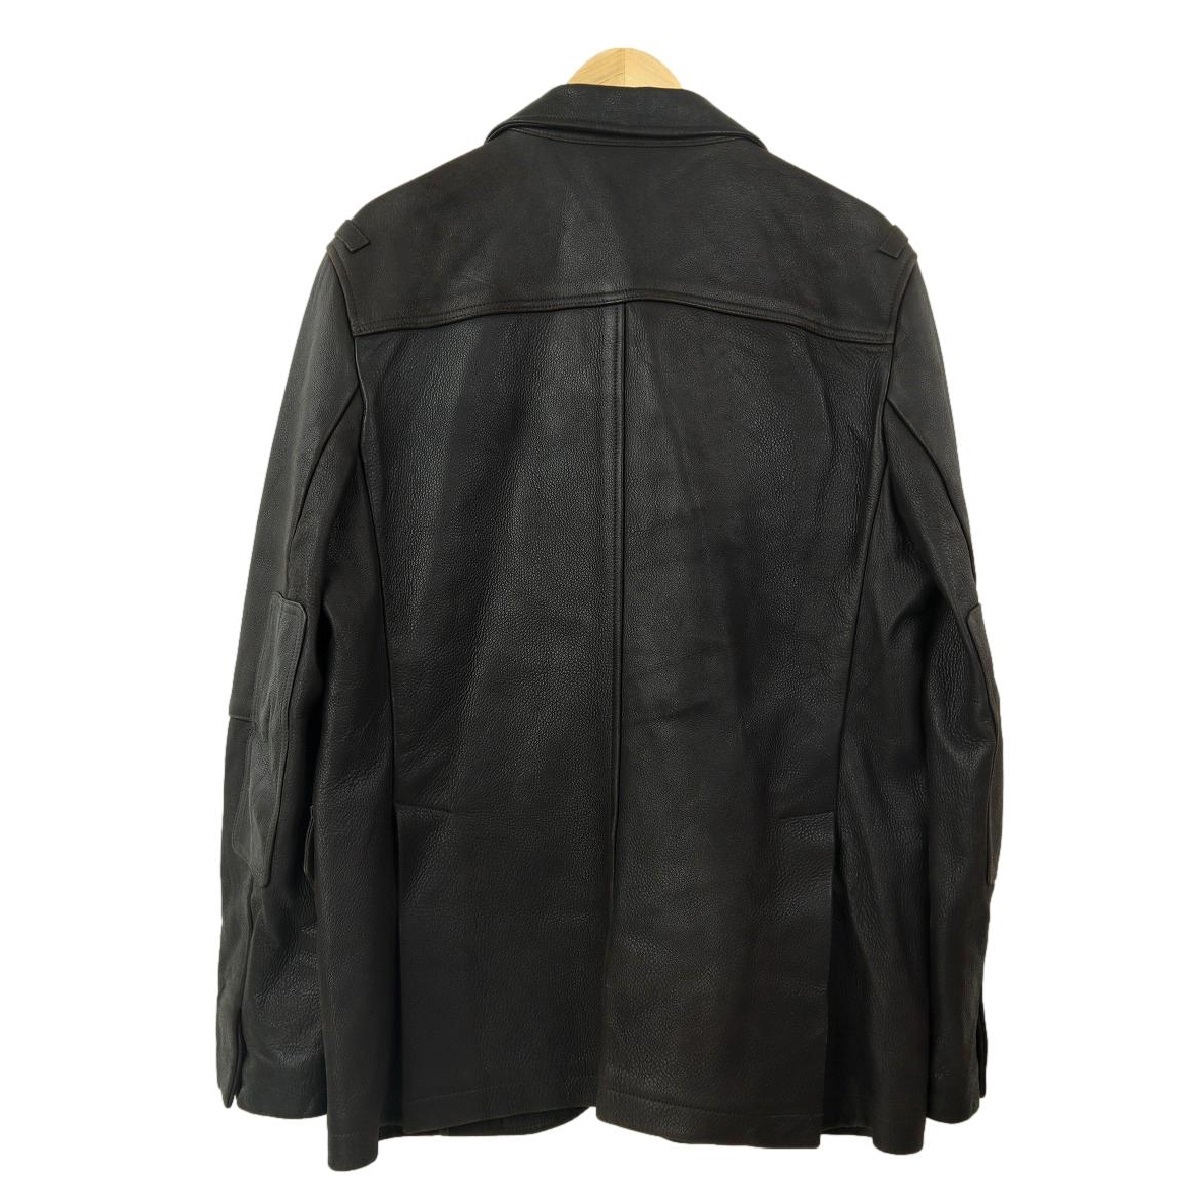 [S1822][ большой размер L 42][ кожа ягненка ]Theory теория кожаный жакет tailored jacket блейзер все кожа мужской 